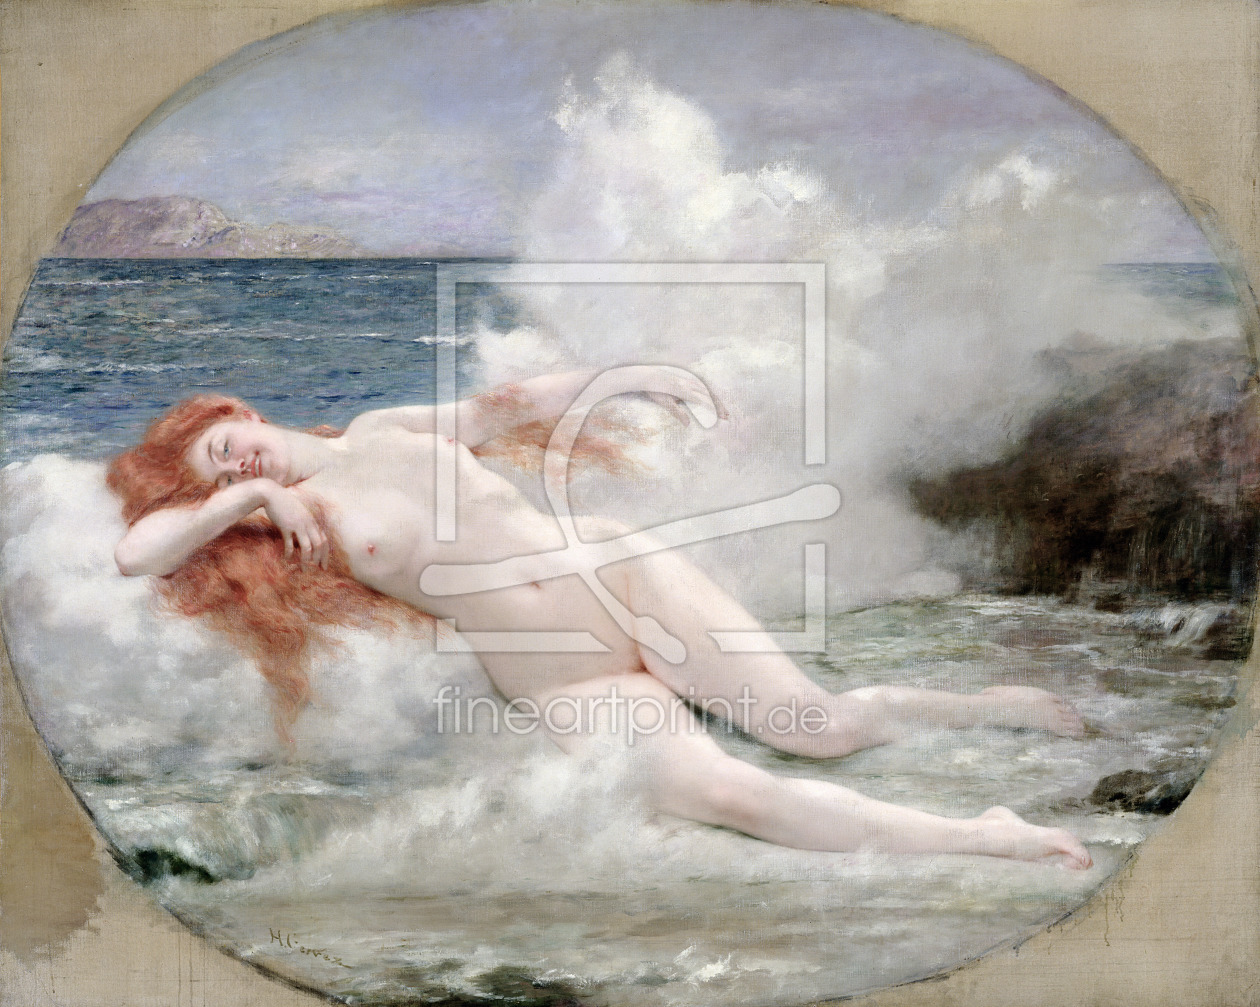 Bild-Nr.: 31002729 The Birth of Venus, c.1896 erstellt von 